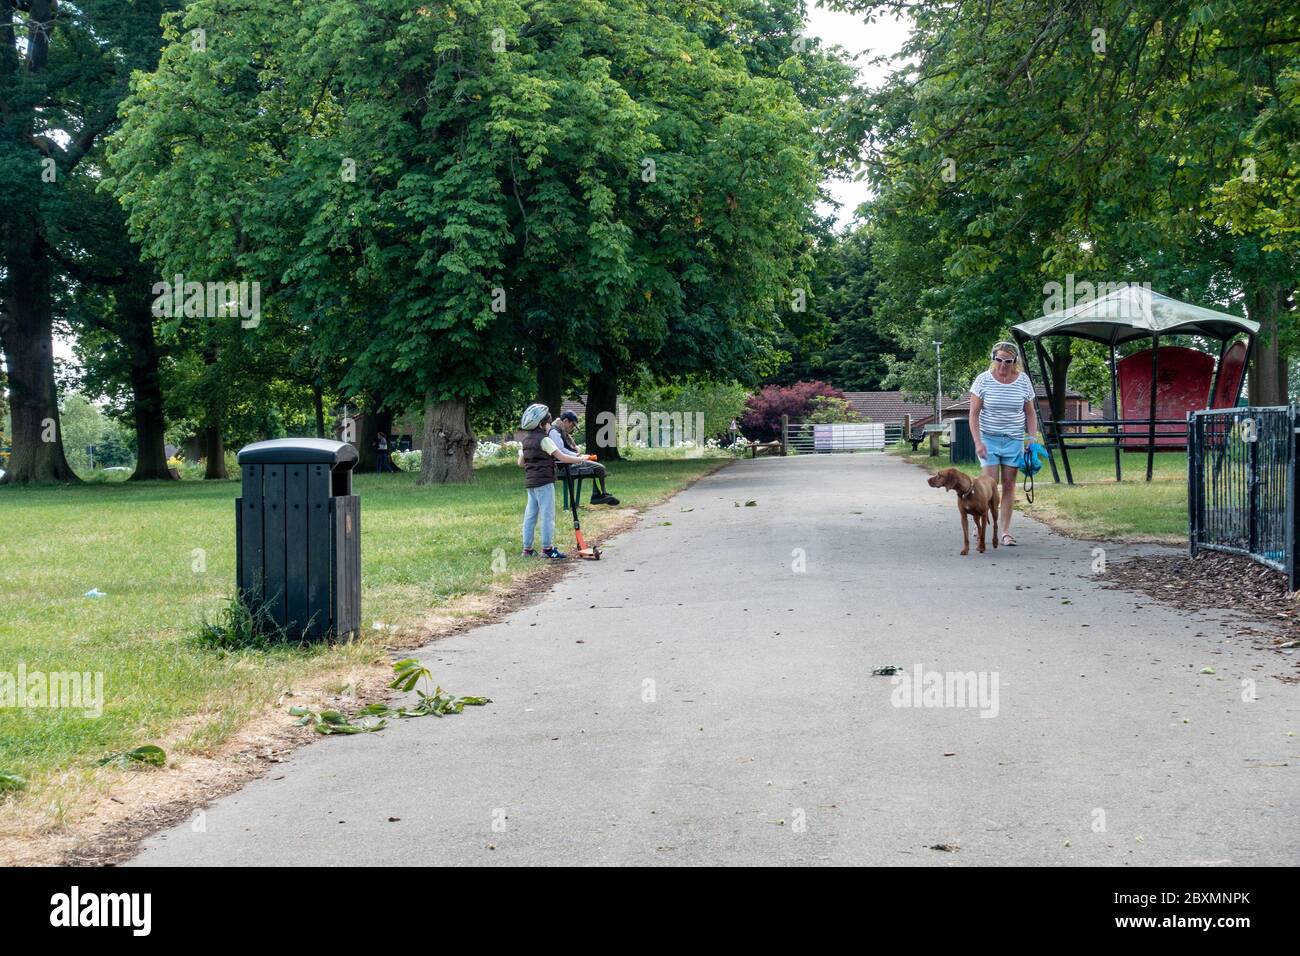 Ein kleines Kind auf einem Roller und eine Dame, die einen Hund geht, geben einander eine breite Geburt, um die soziale Distanz im Park durch Coronavirus zu erhalten. Stockfoto